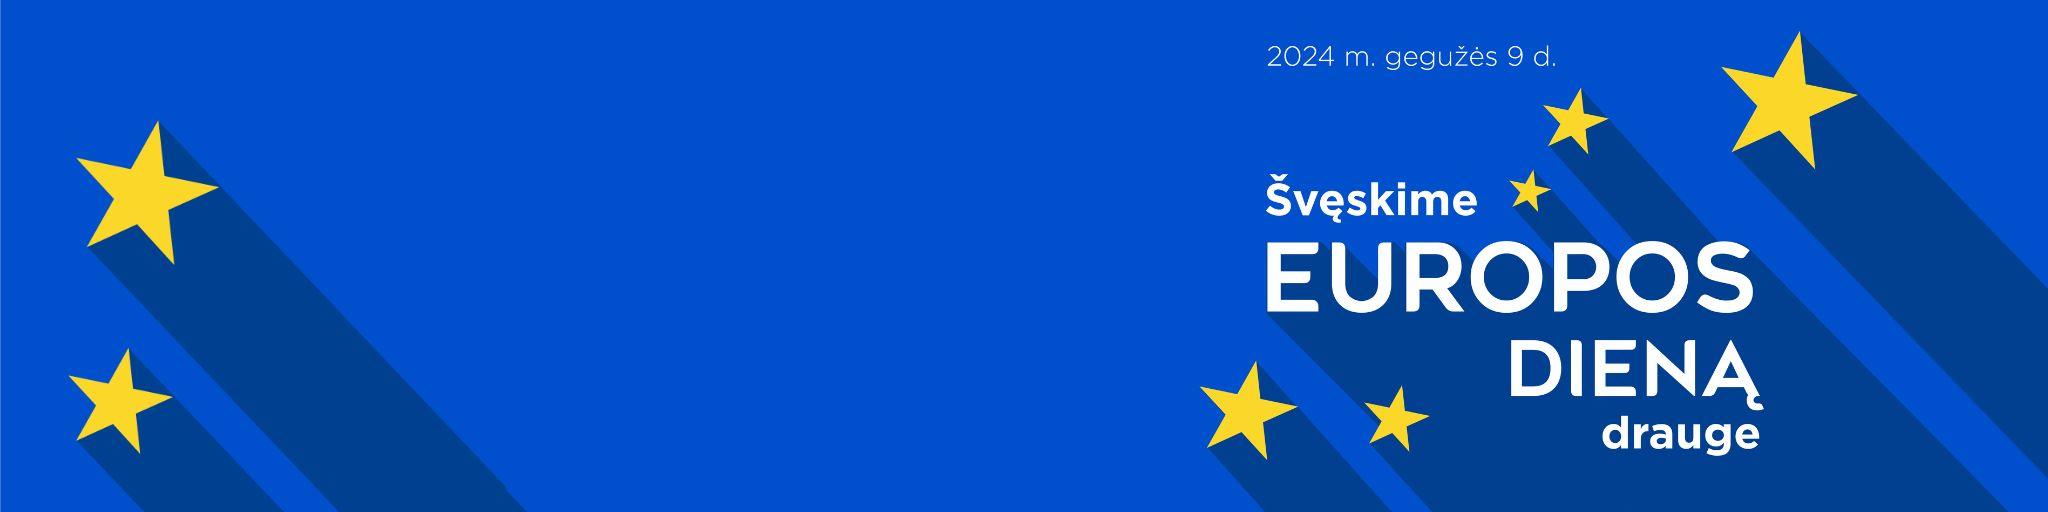 Skirtukas, kuriame parašyta „Švęskime Europos dieną drauge“